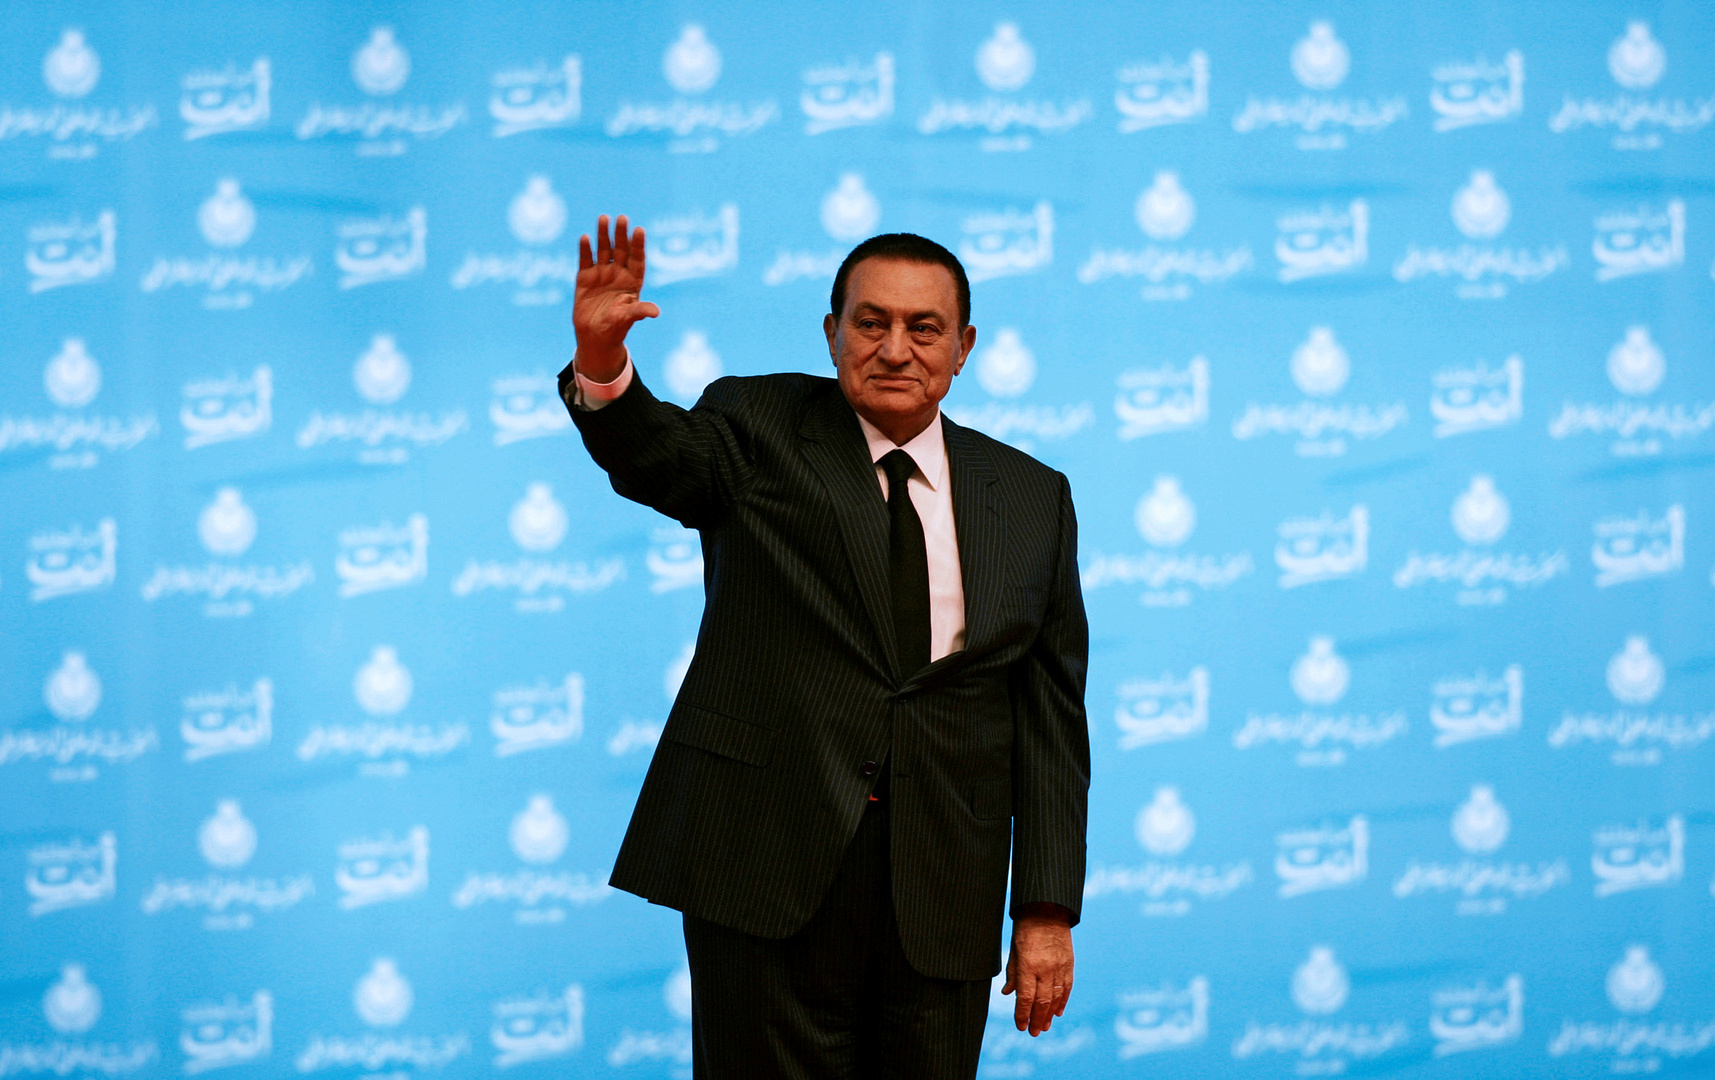 الكشف عن سبب وفاة الرئيس المصري الراحل حسني مبارك واللحظات الأخيرة في حياته